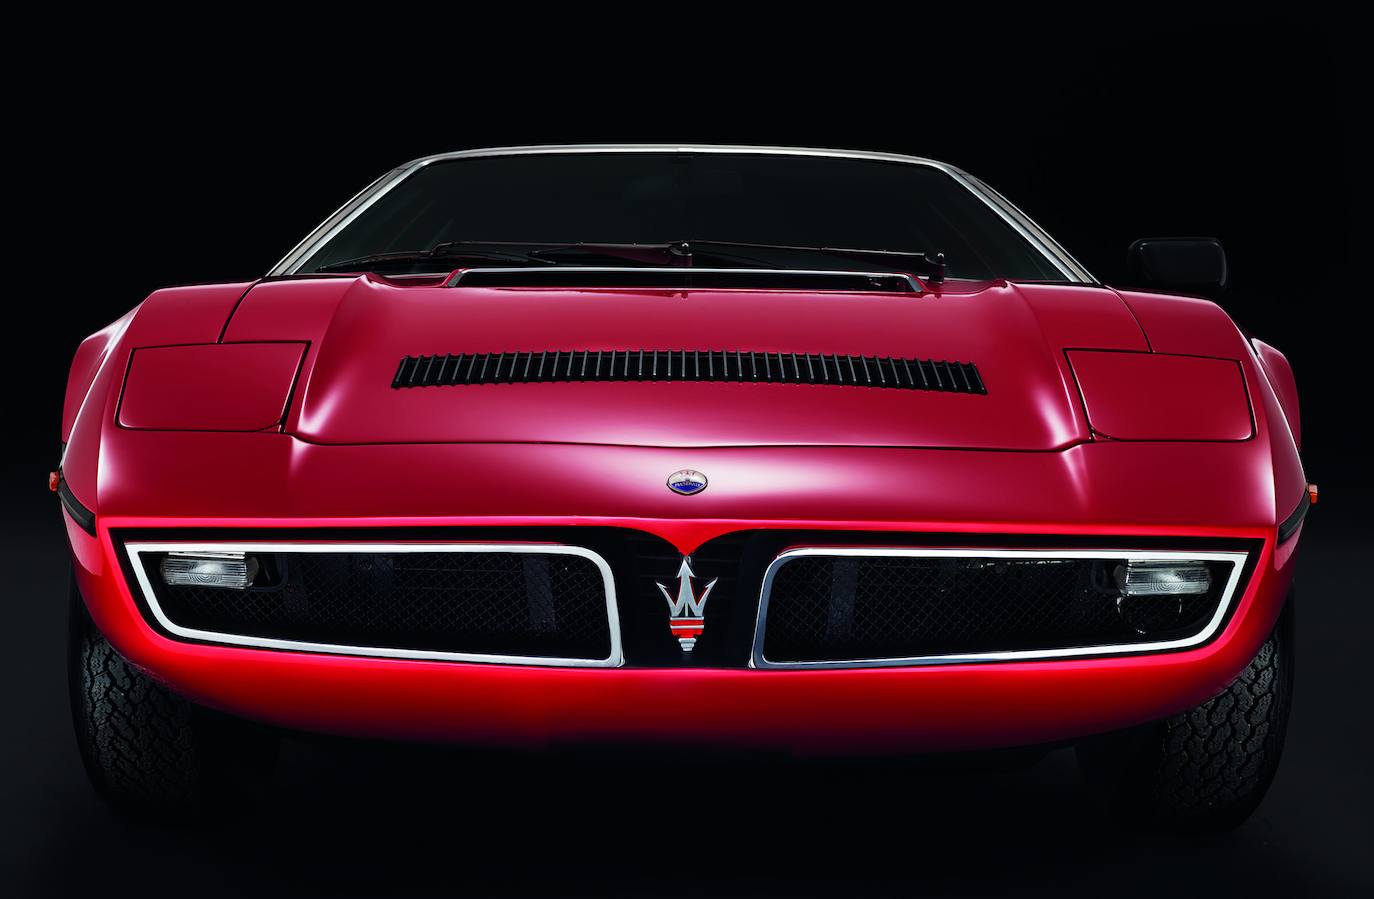 Fotogalería: El Maserati Bora cumple 50 años